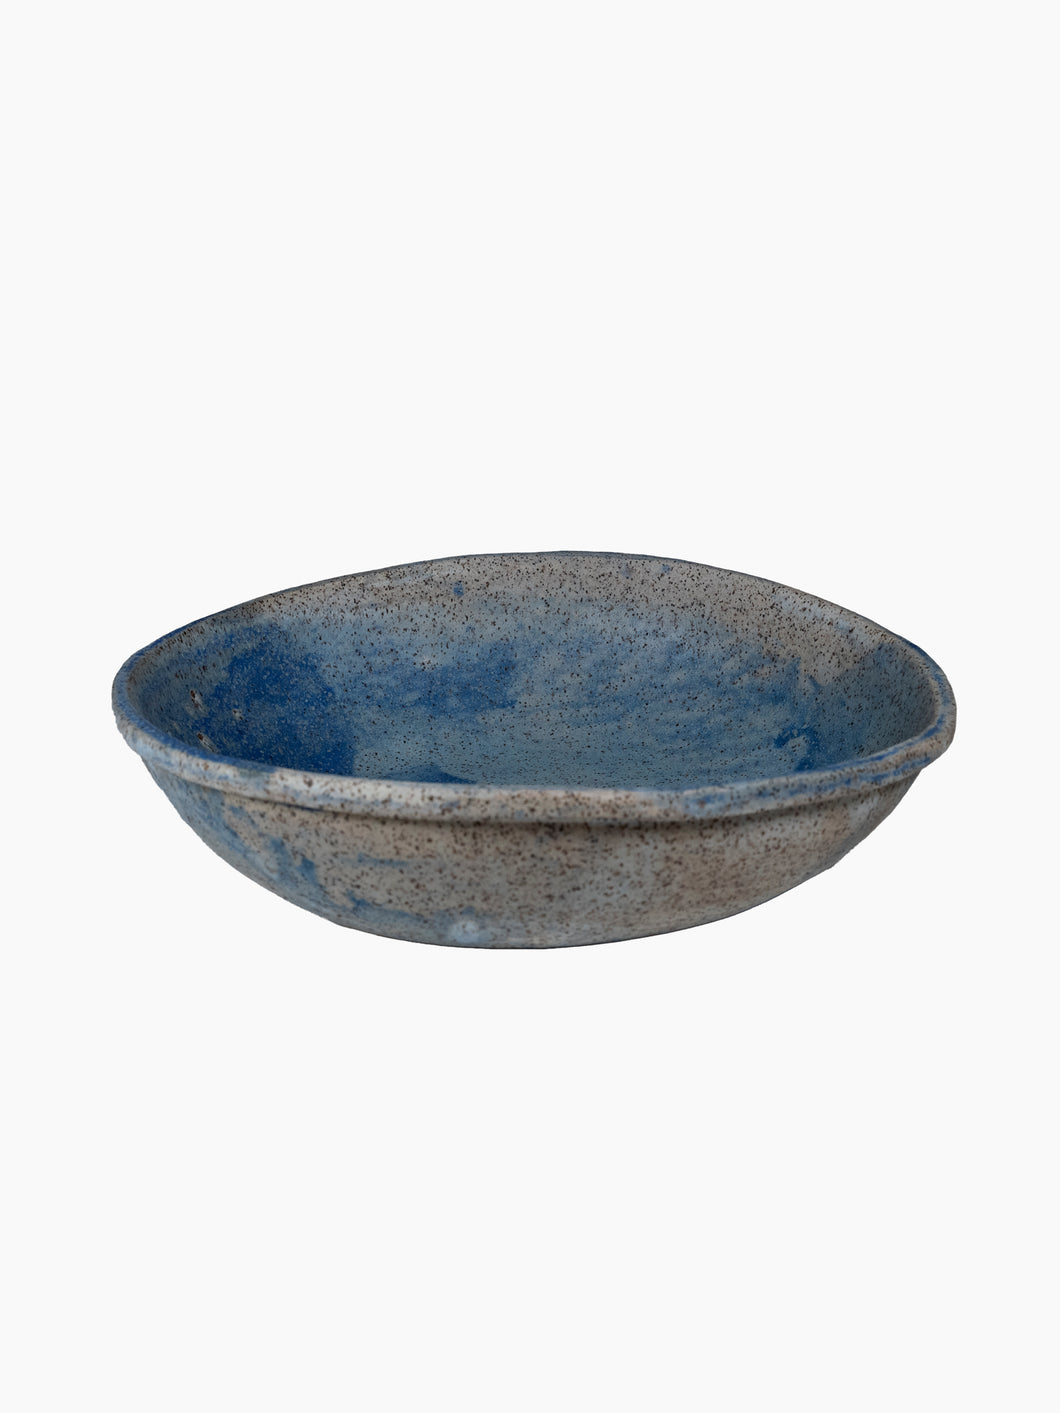 ANK Ceramics Sky Blue Serving Bowl